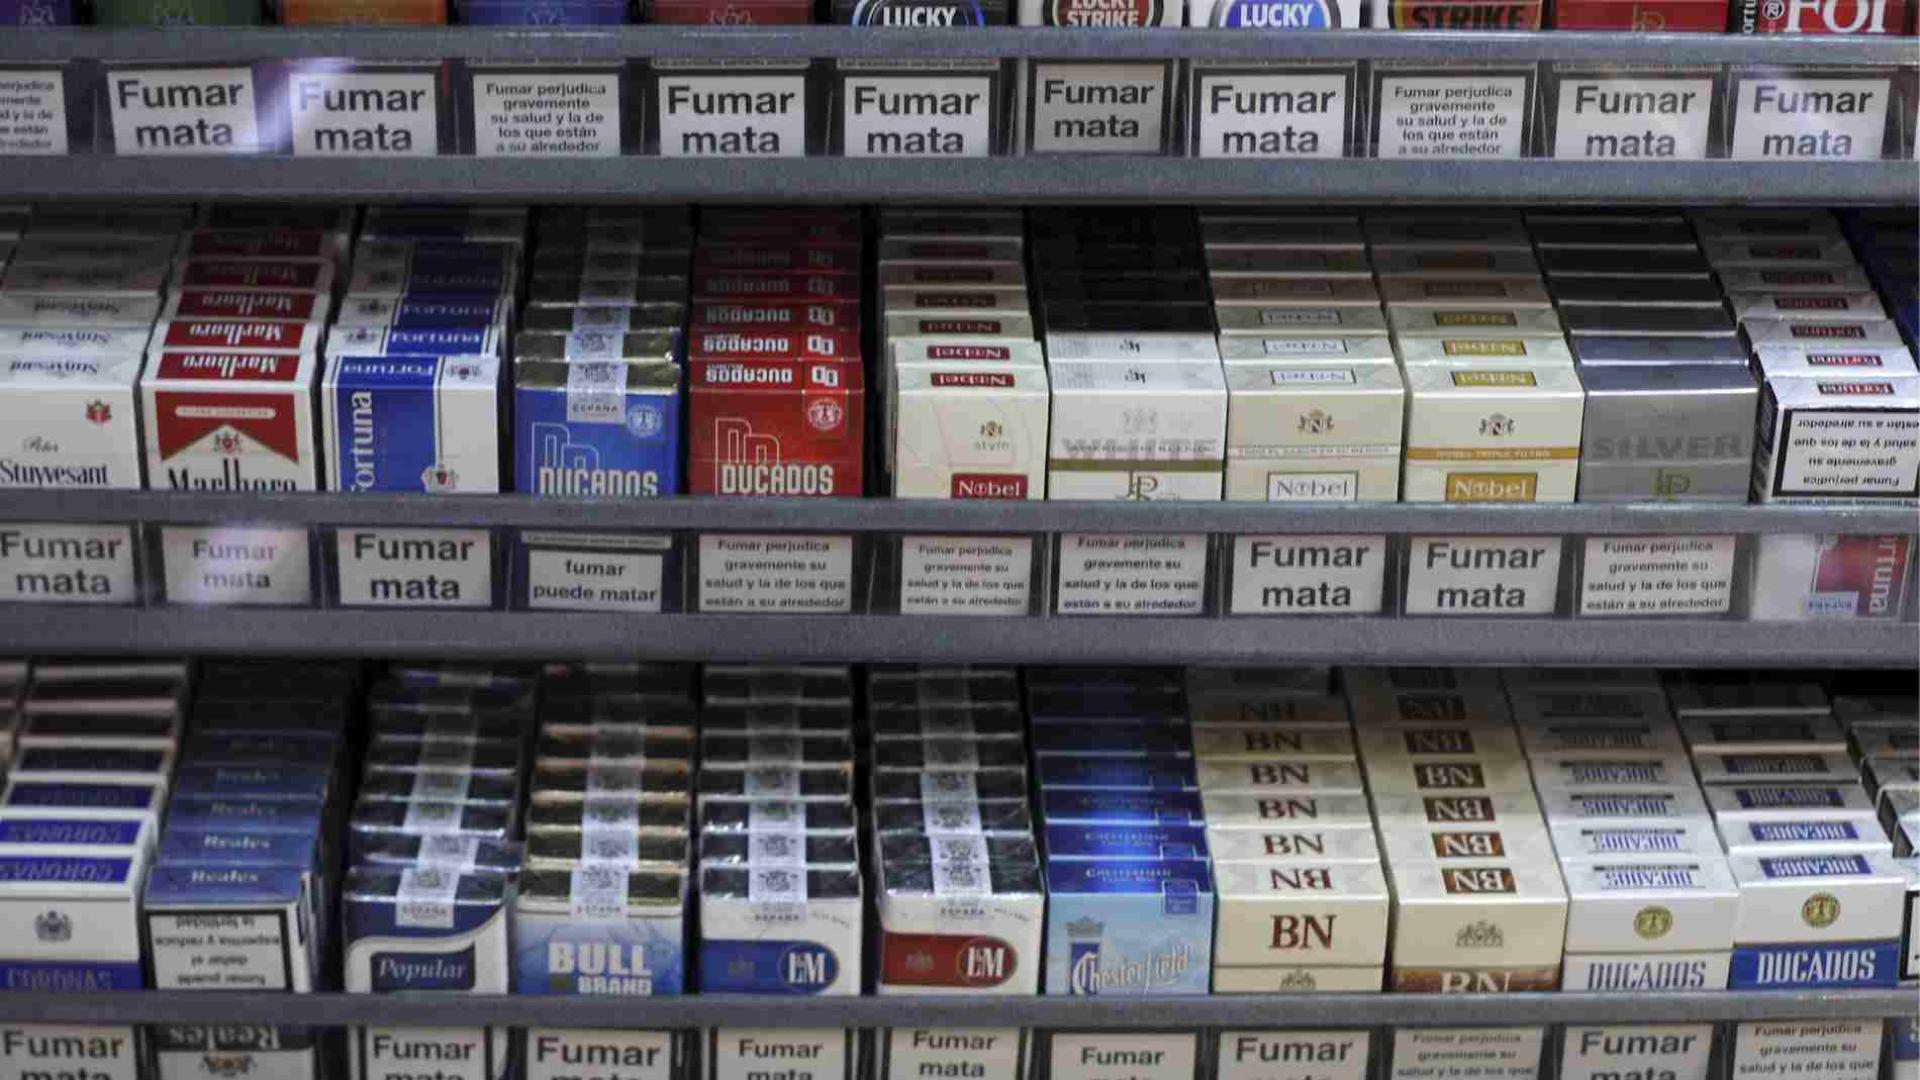 sube el precio del tabaco en abril en marcas tan conocidas como chesterfield